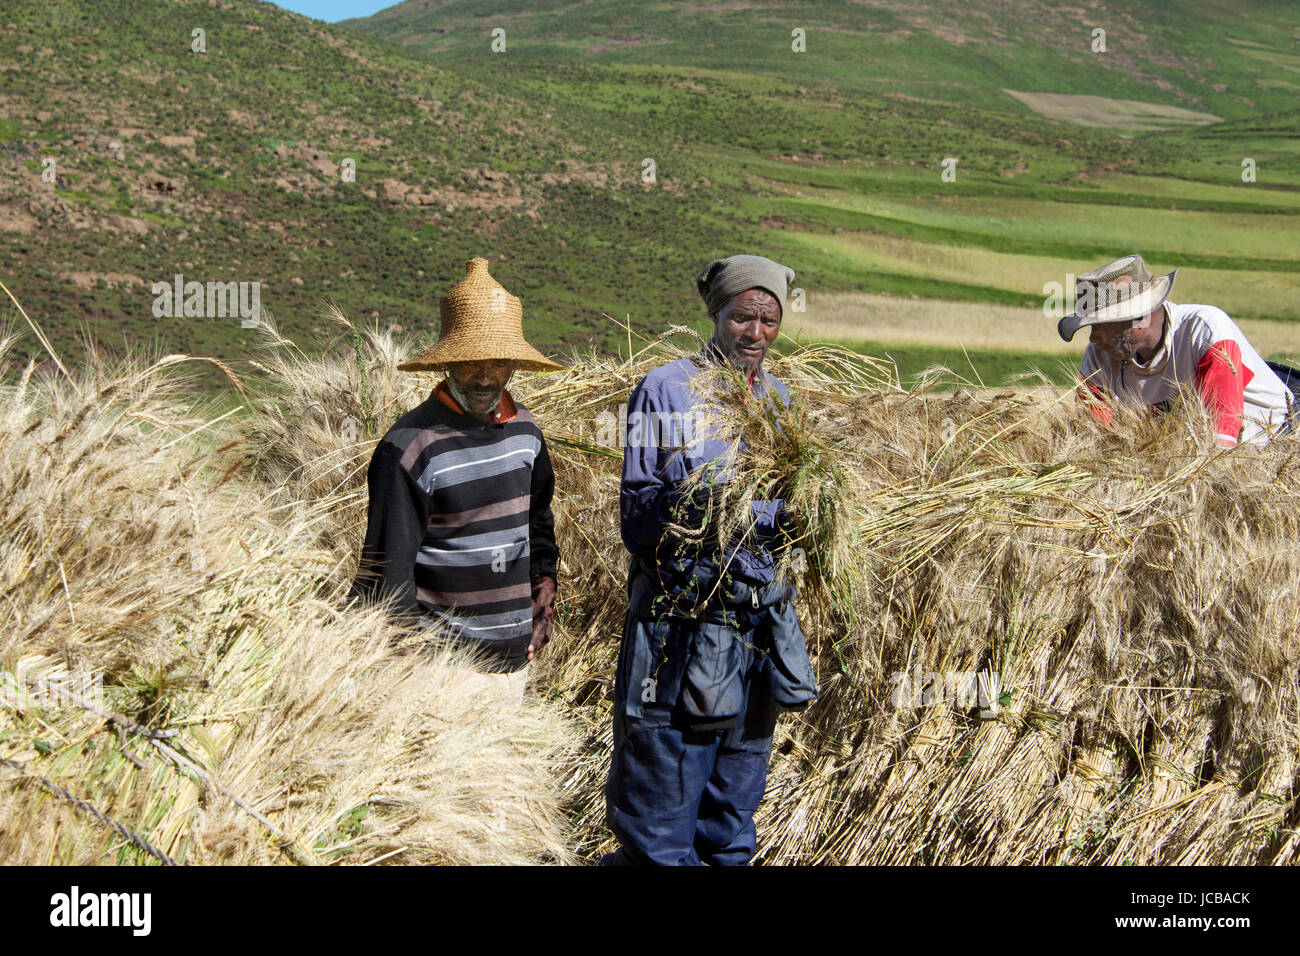 La récolte de blé de l'empilement des agriculteurs du Lesotho Highlands Le sud de l'Afrique Centrale Banque D'Images